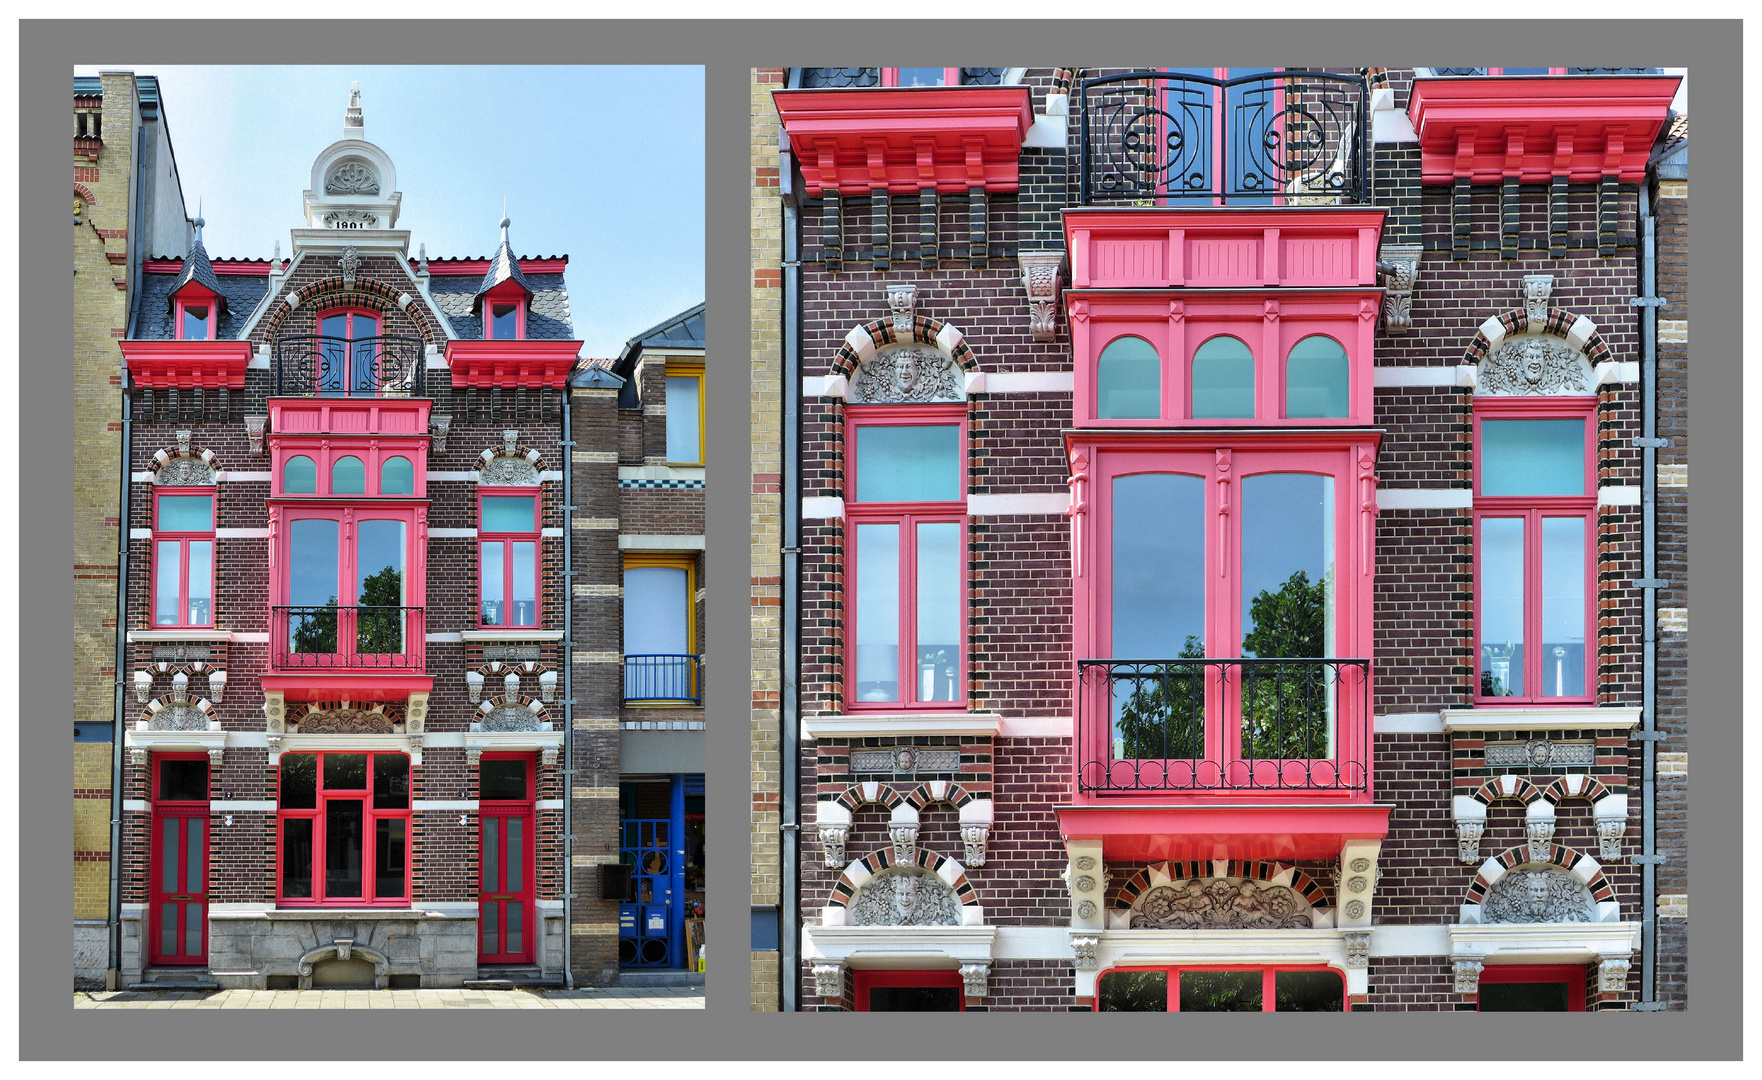 Architektur in Venlo